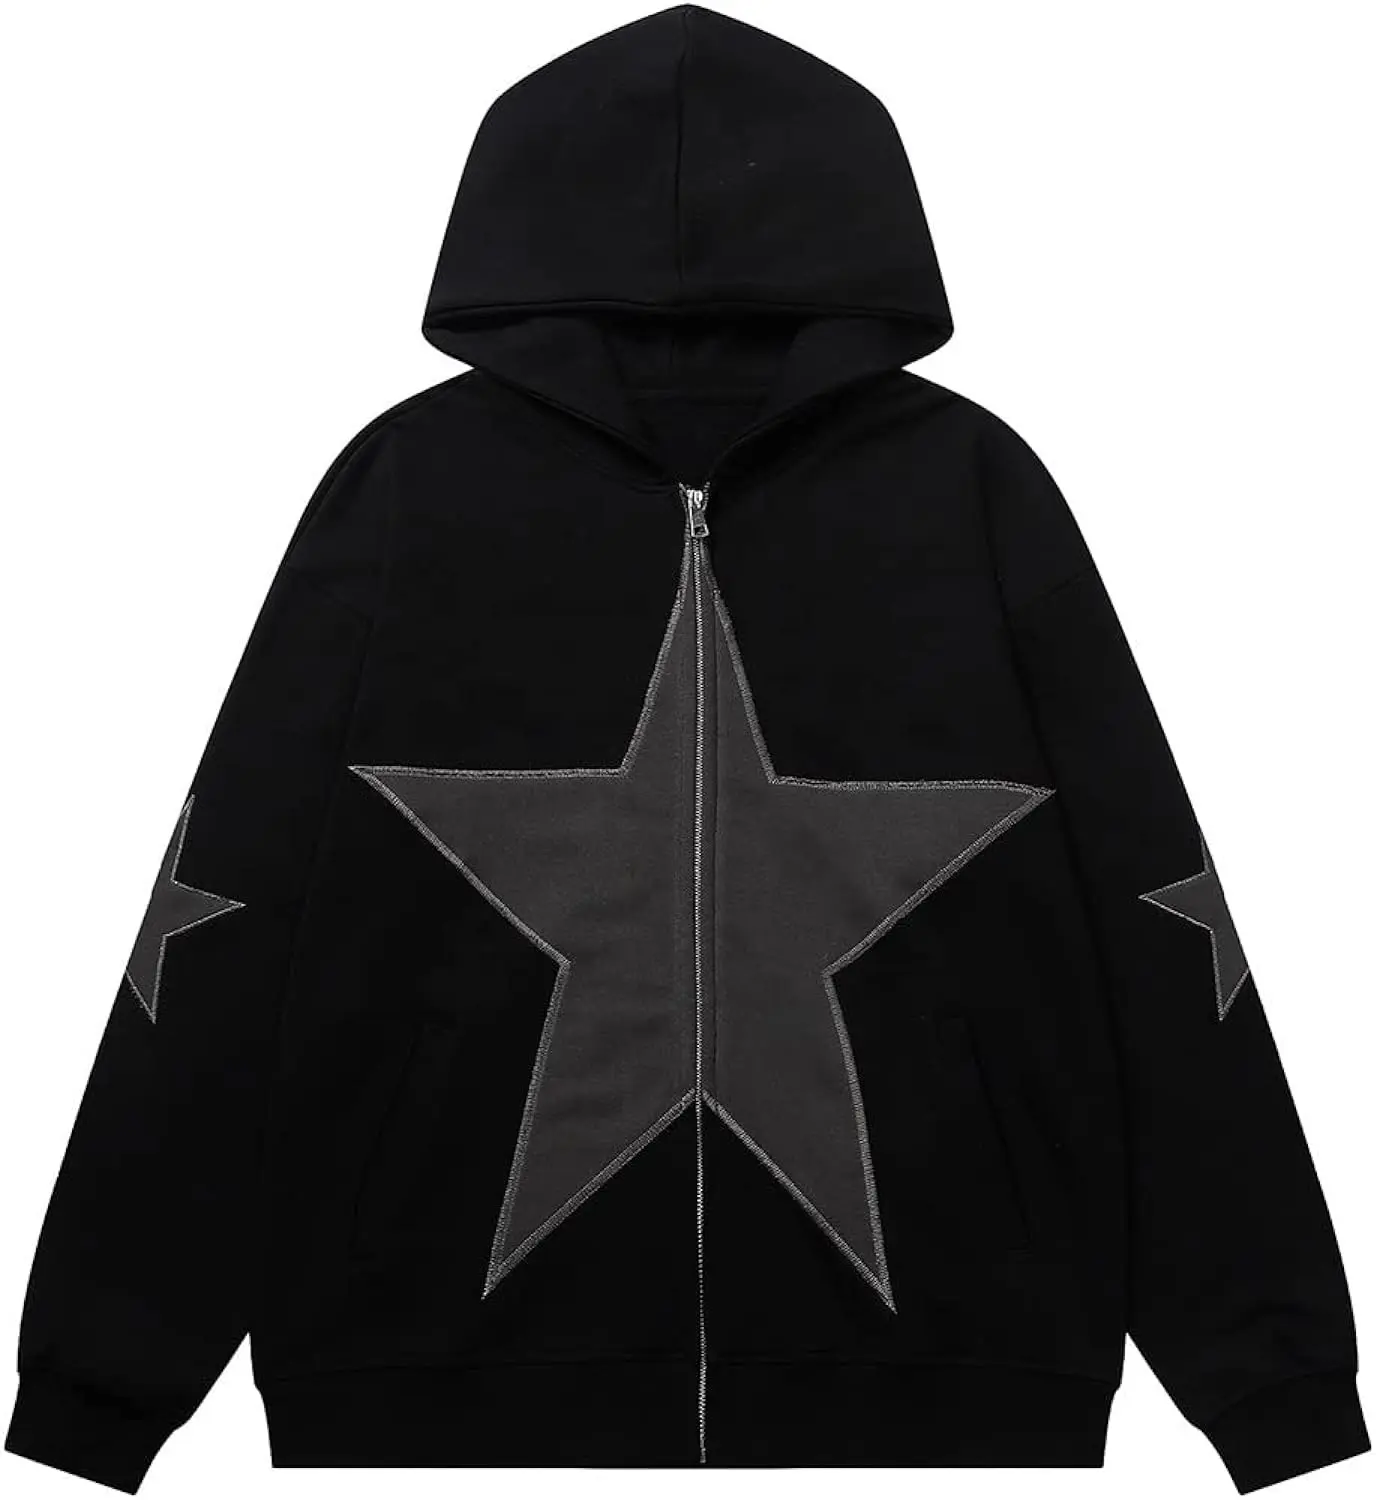 Черная Толстовка со звездой спереди, новый дизайн, модная толстовка с капюшоном с вышитыми звездами, толстовка со звездами, толстовка с капюшоном